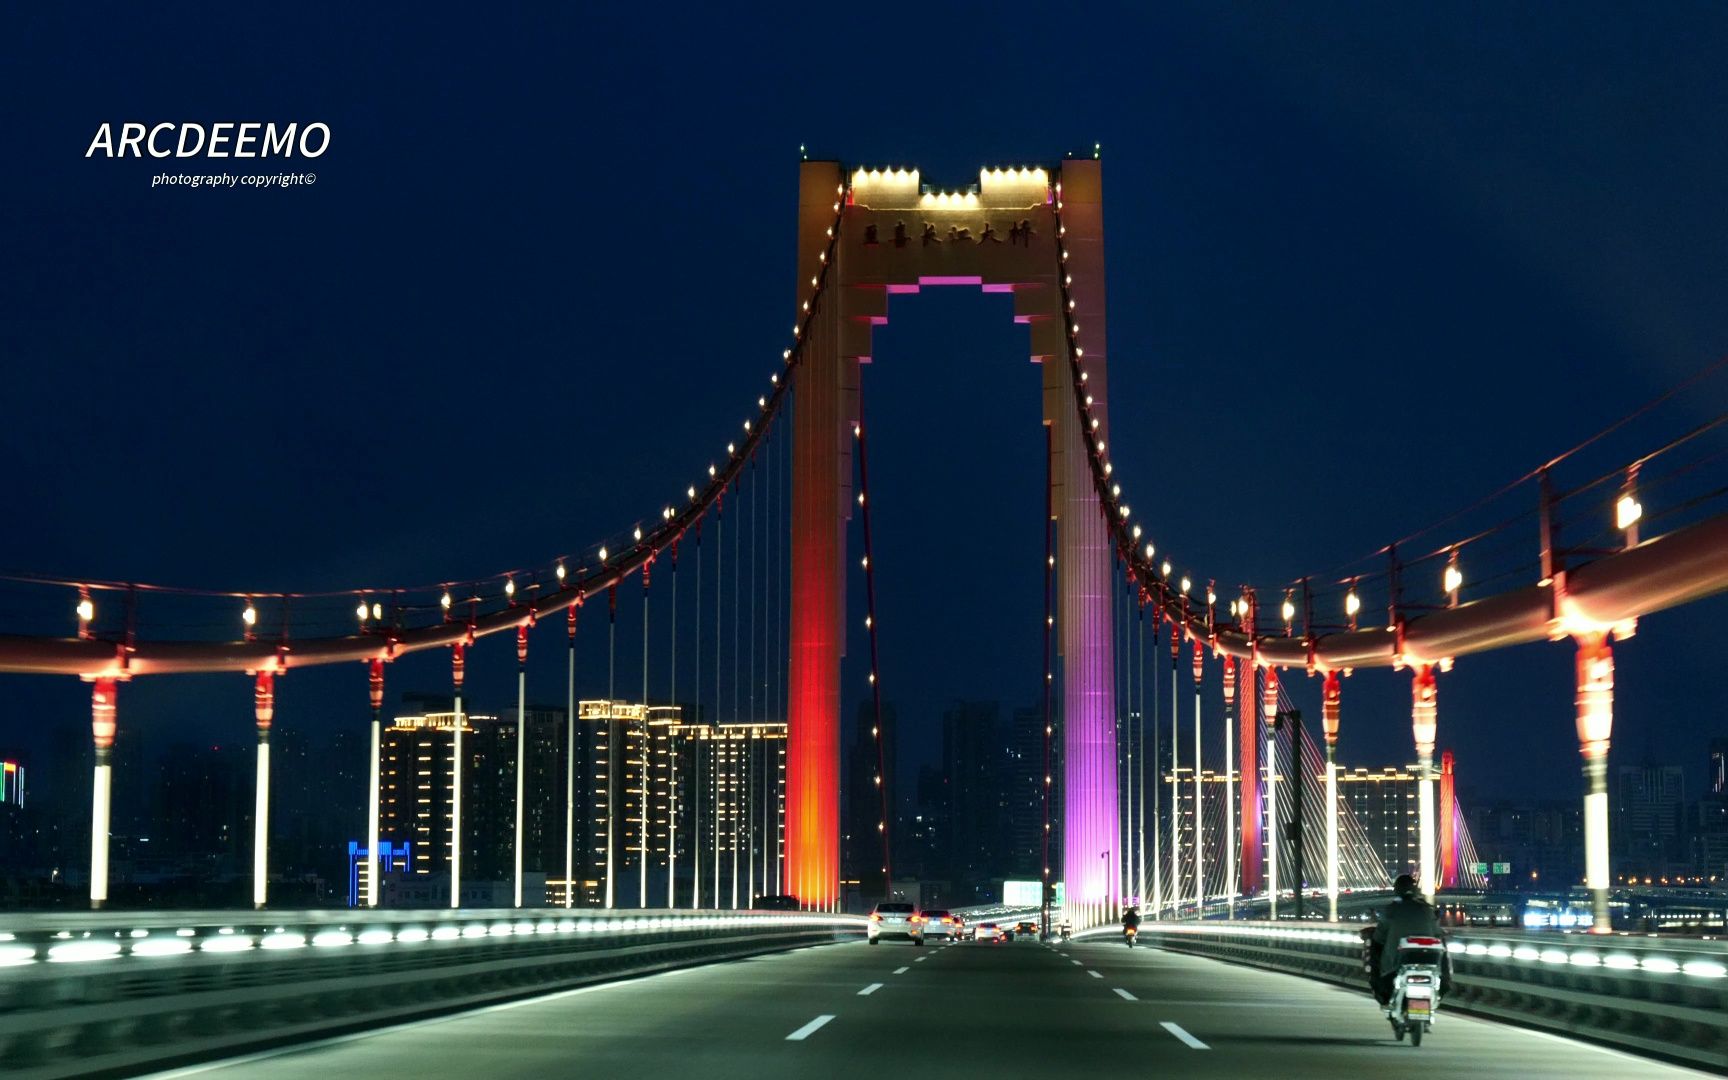 至喜长江大桥夜景图片